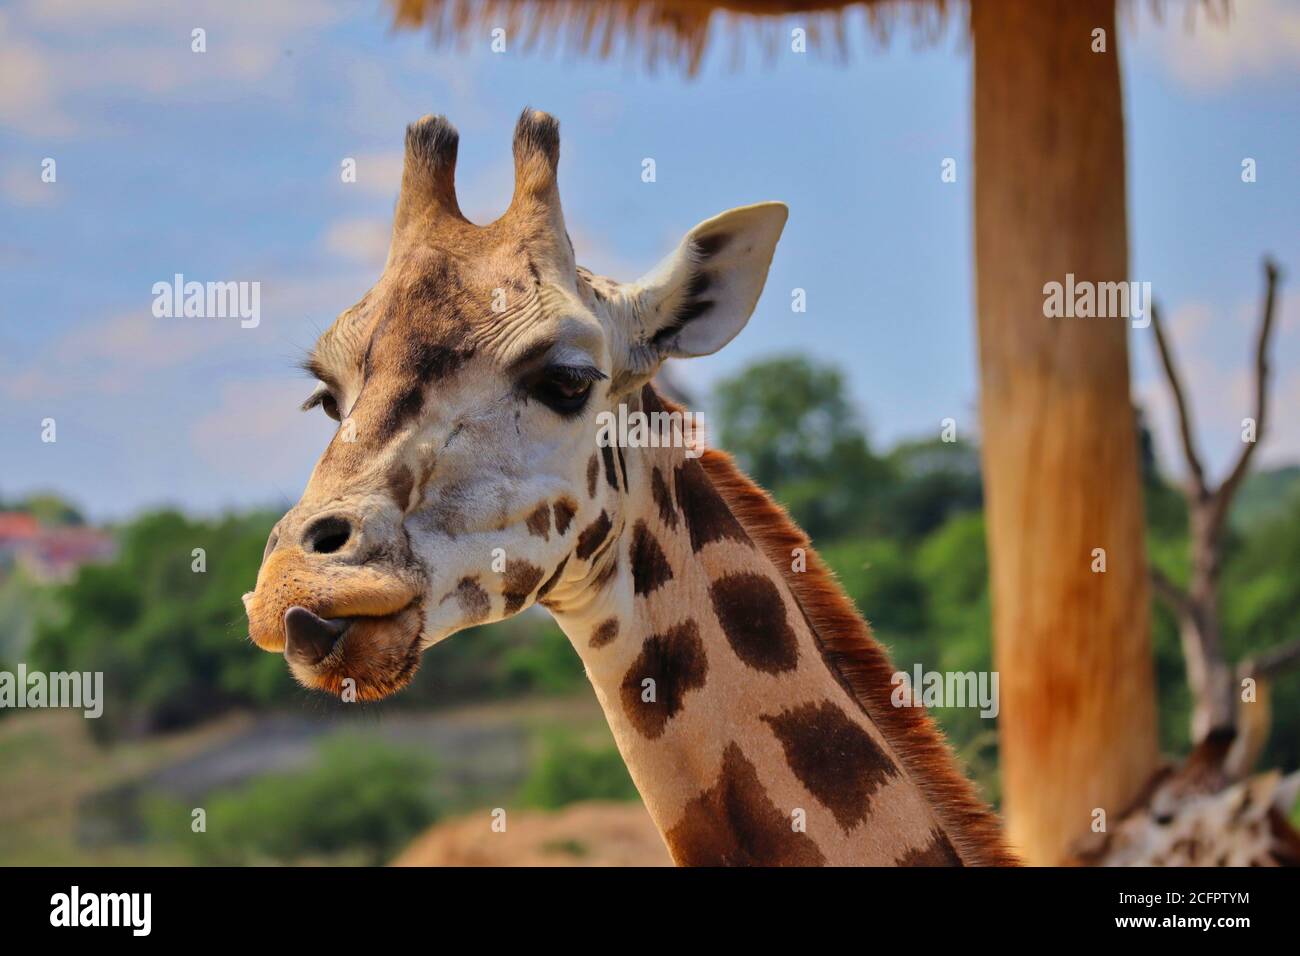 La giraffa di Rothschild fa il naso con la sua lingua in uno zoo. Foto Stock